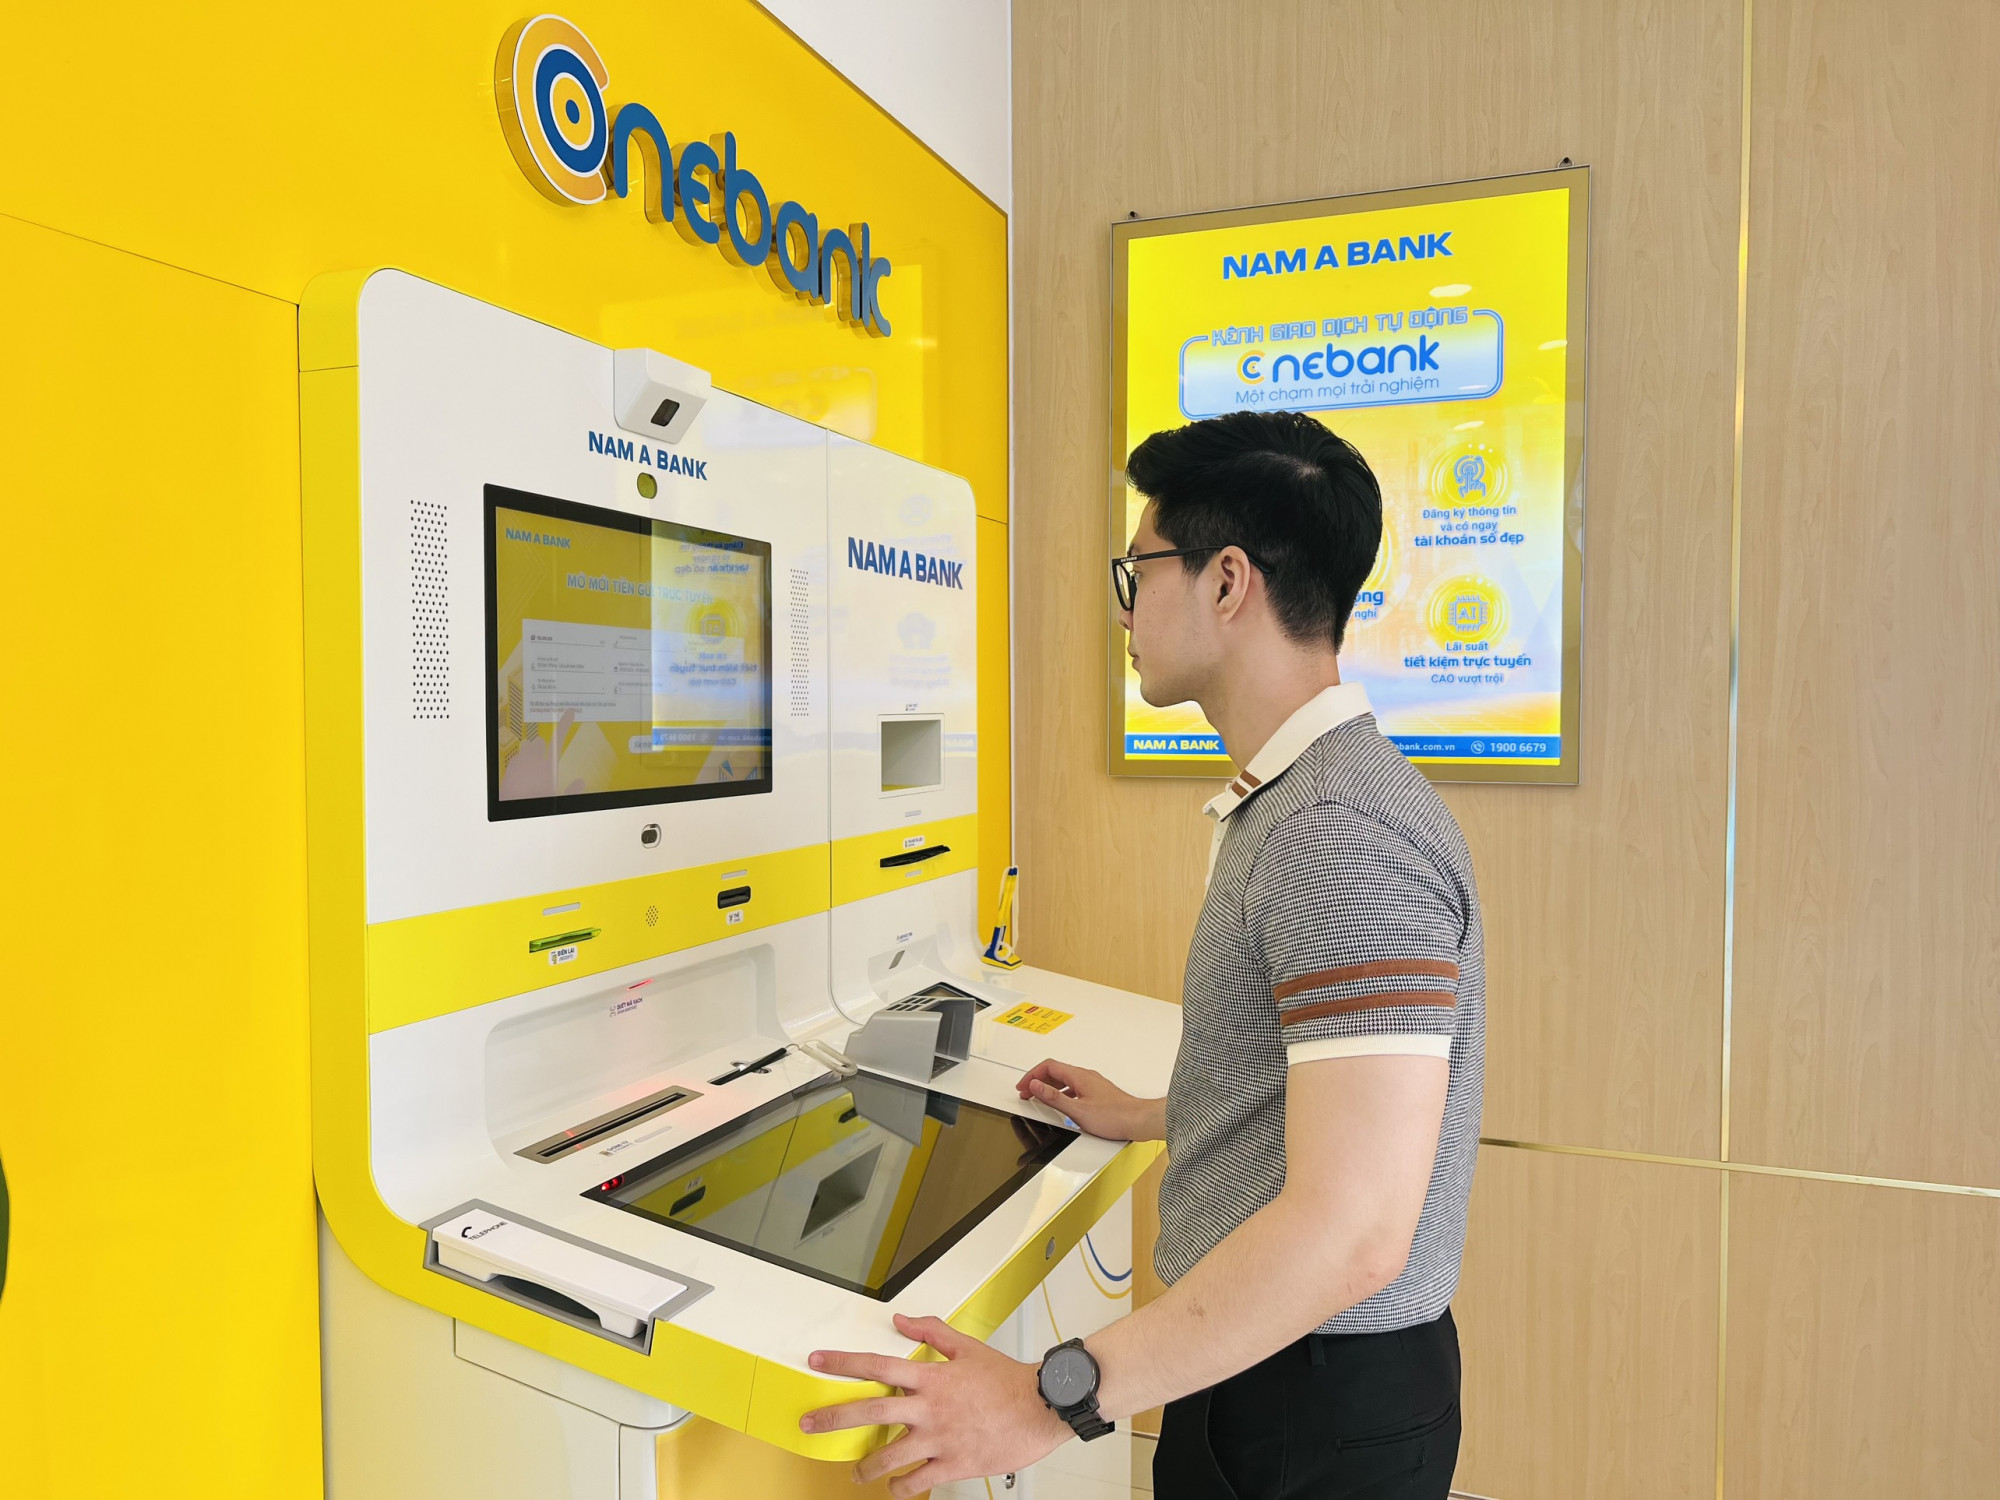 ONEBANK đã trở thành một trong những điểm đến về công nghệ yêu thích của nhiều KH - Ảnh: Nam A Bank